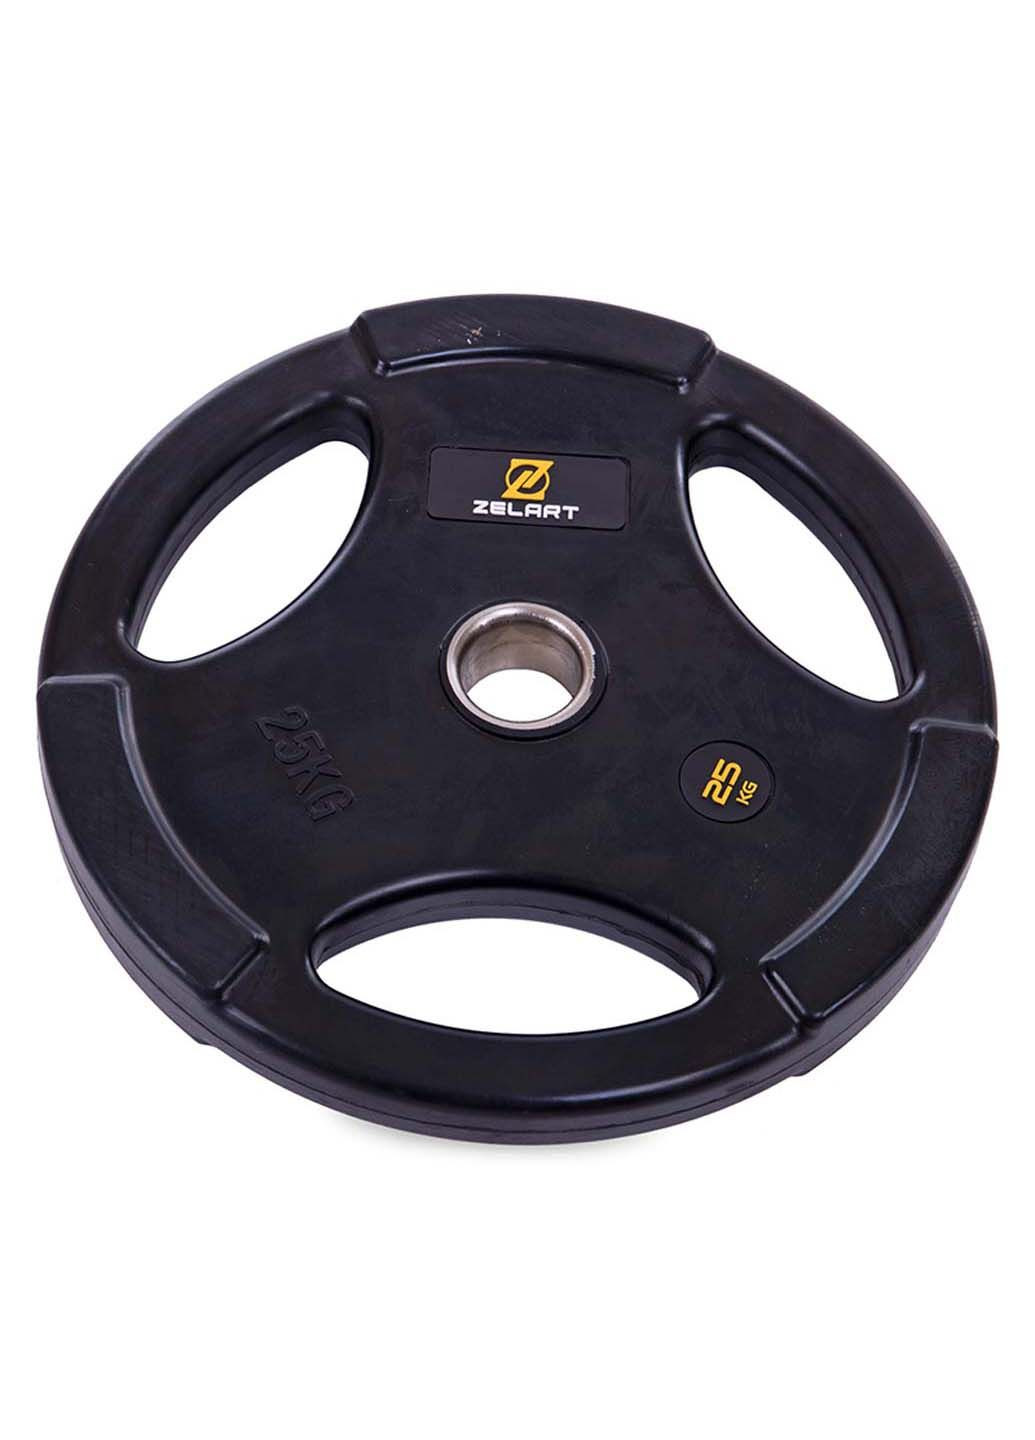 Млинці диски гумові TA-2673 25 кг Zelart (286043438)